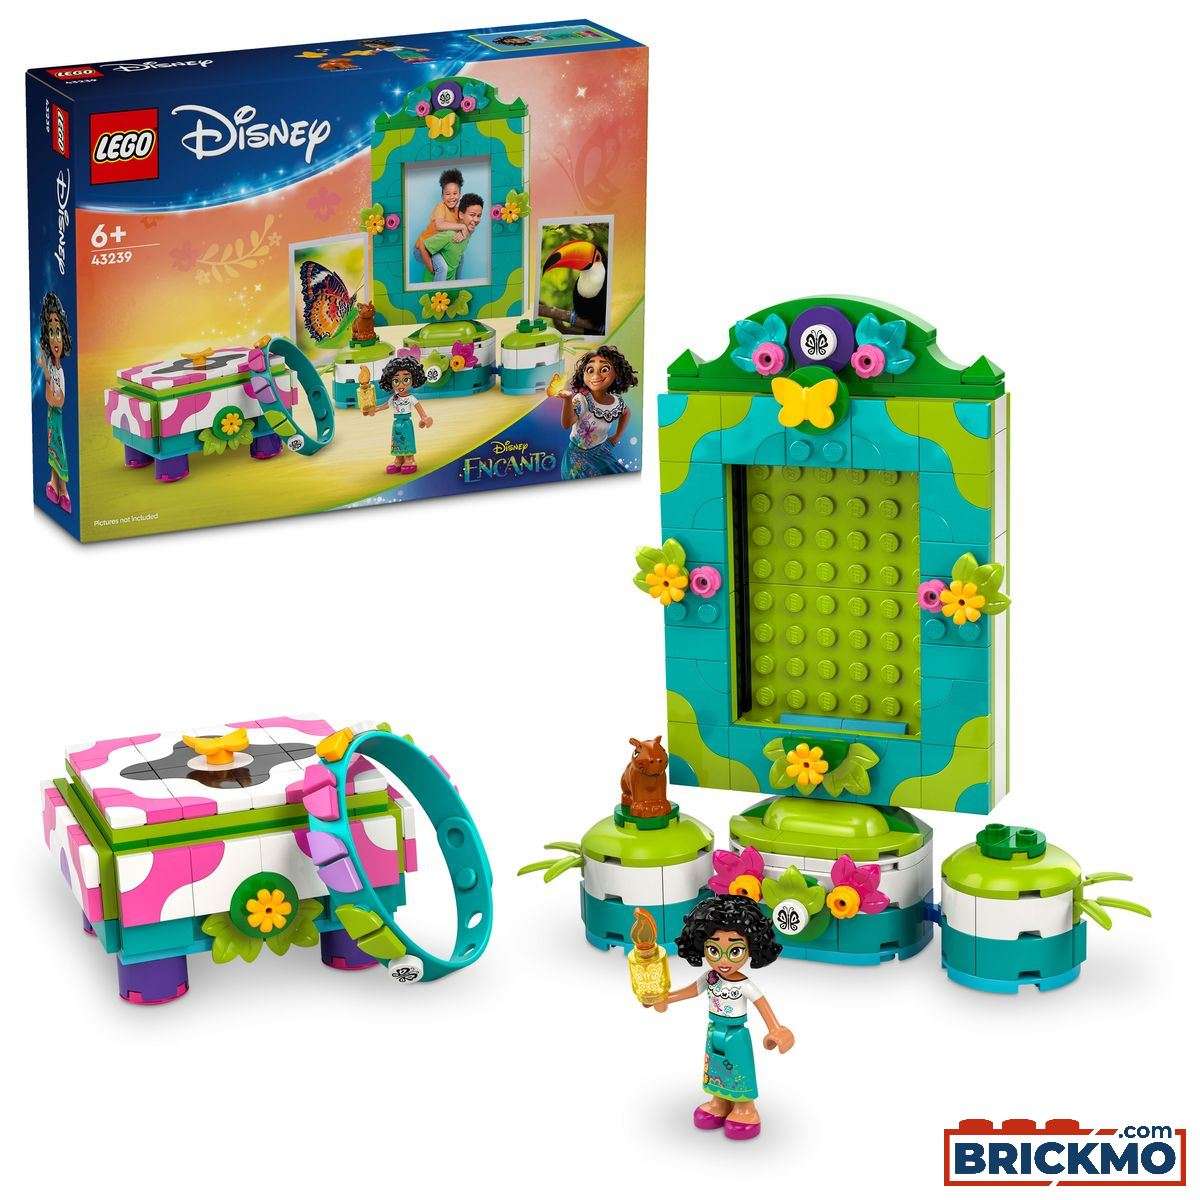 LEGO Disney Classic 43239 Marco de Fotos y Joyero de Mirabel 43239